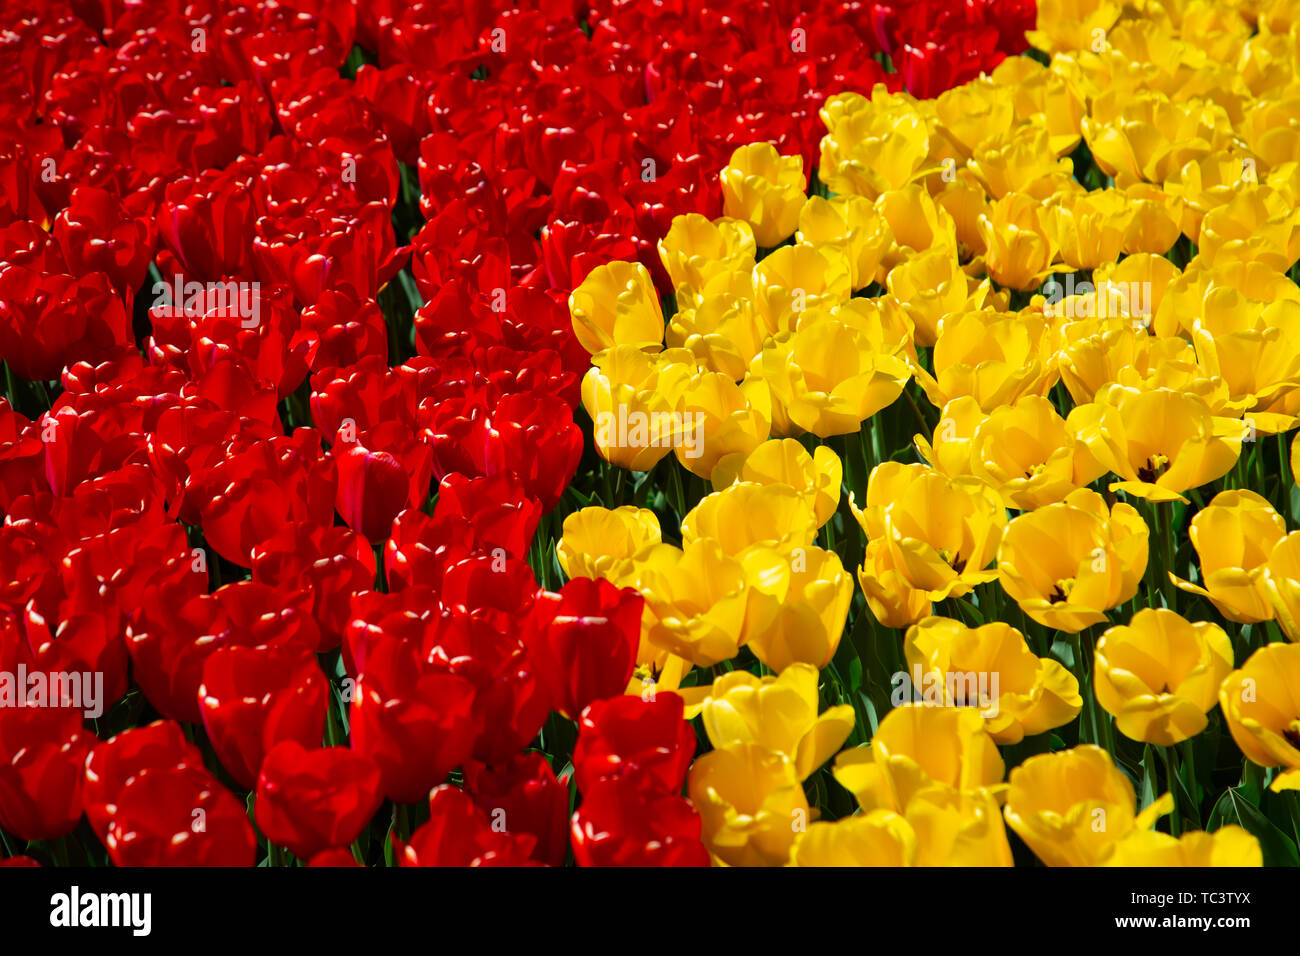 Image de fond de jaune et rouge printemps tulipe Banque D'Images